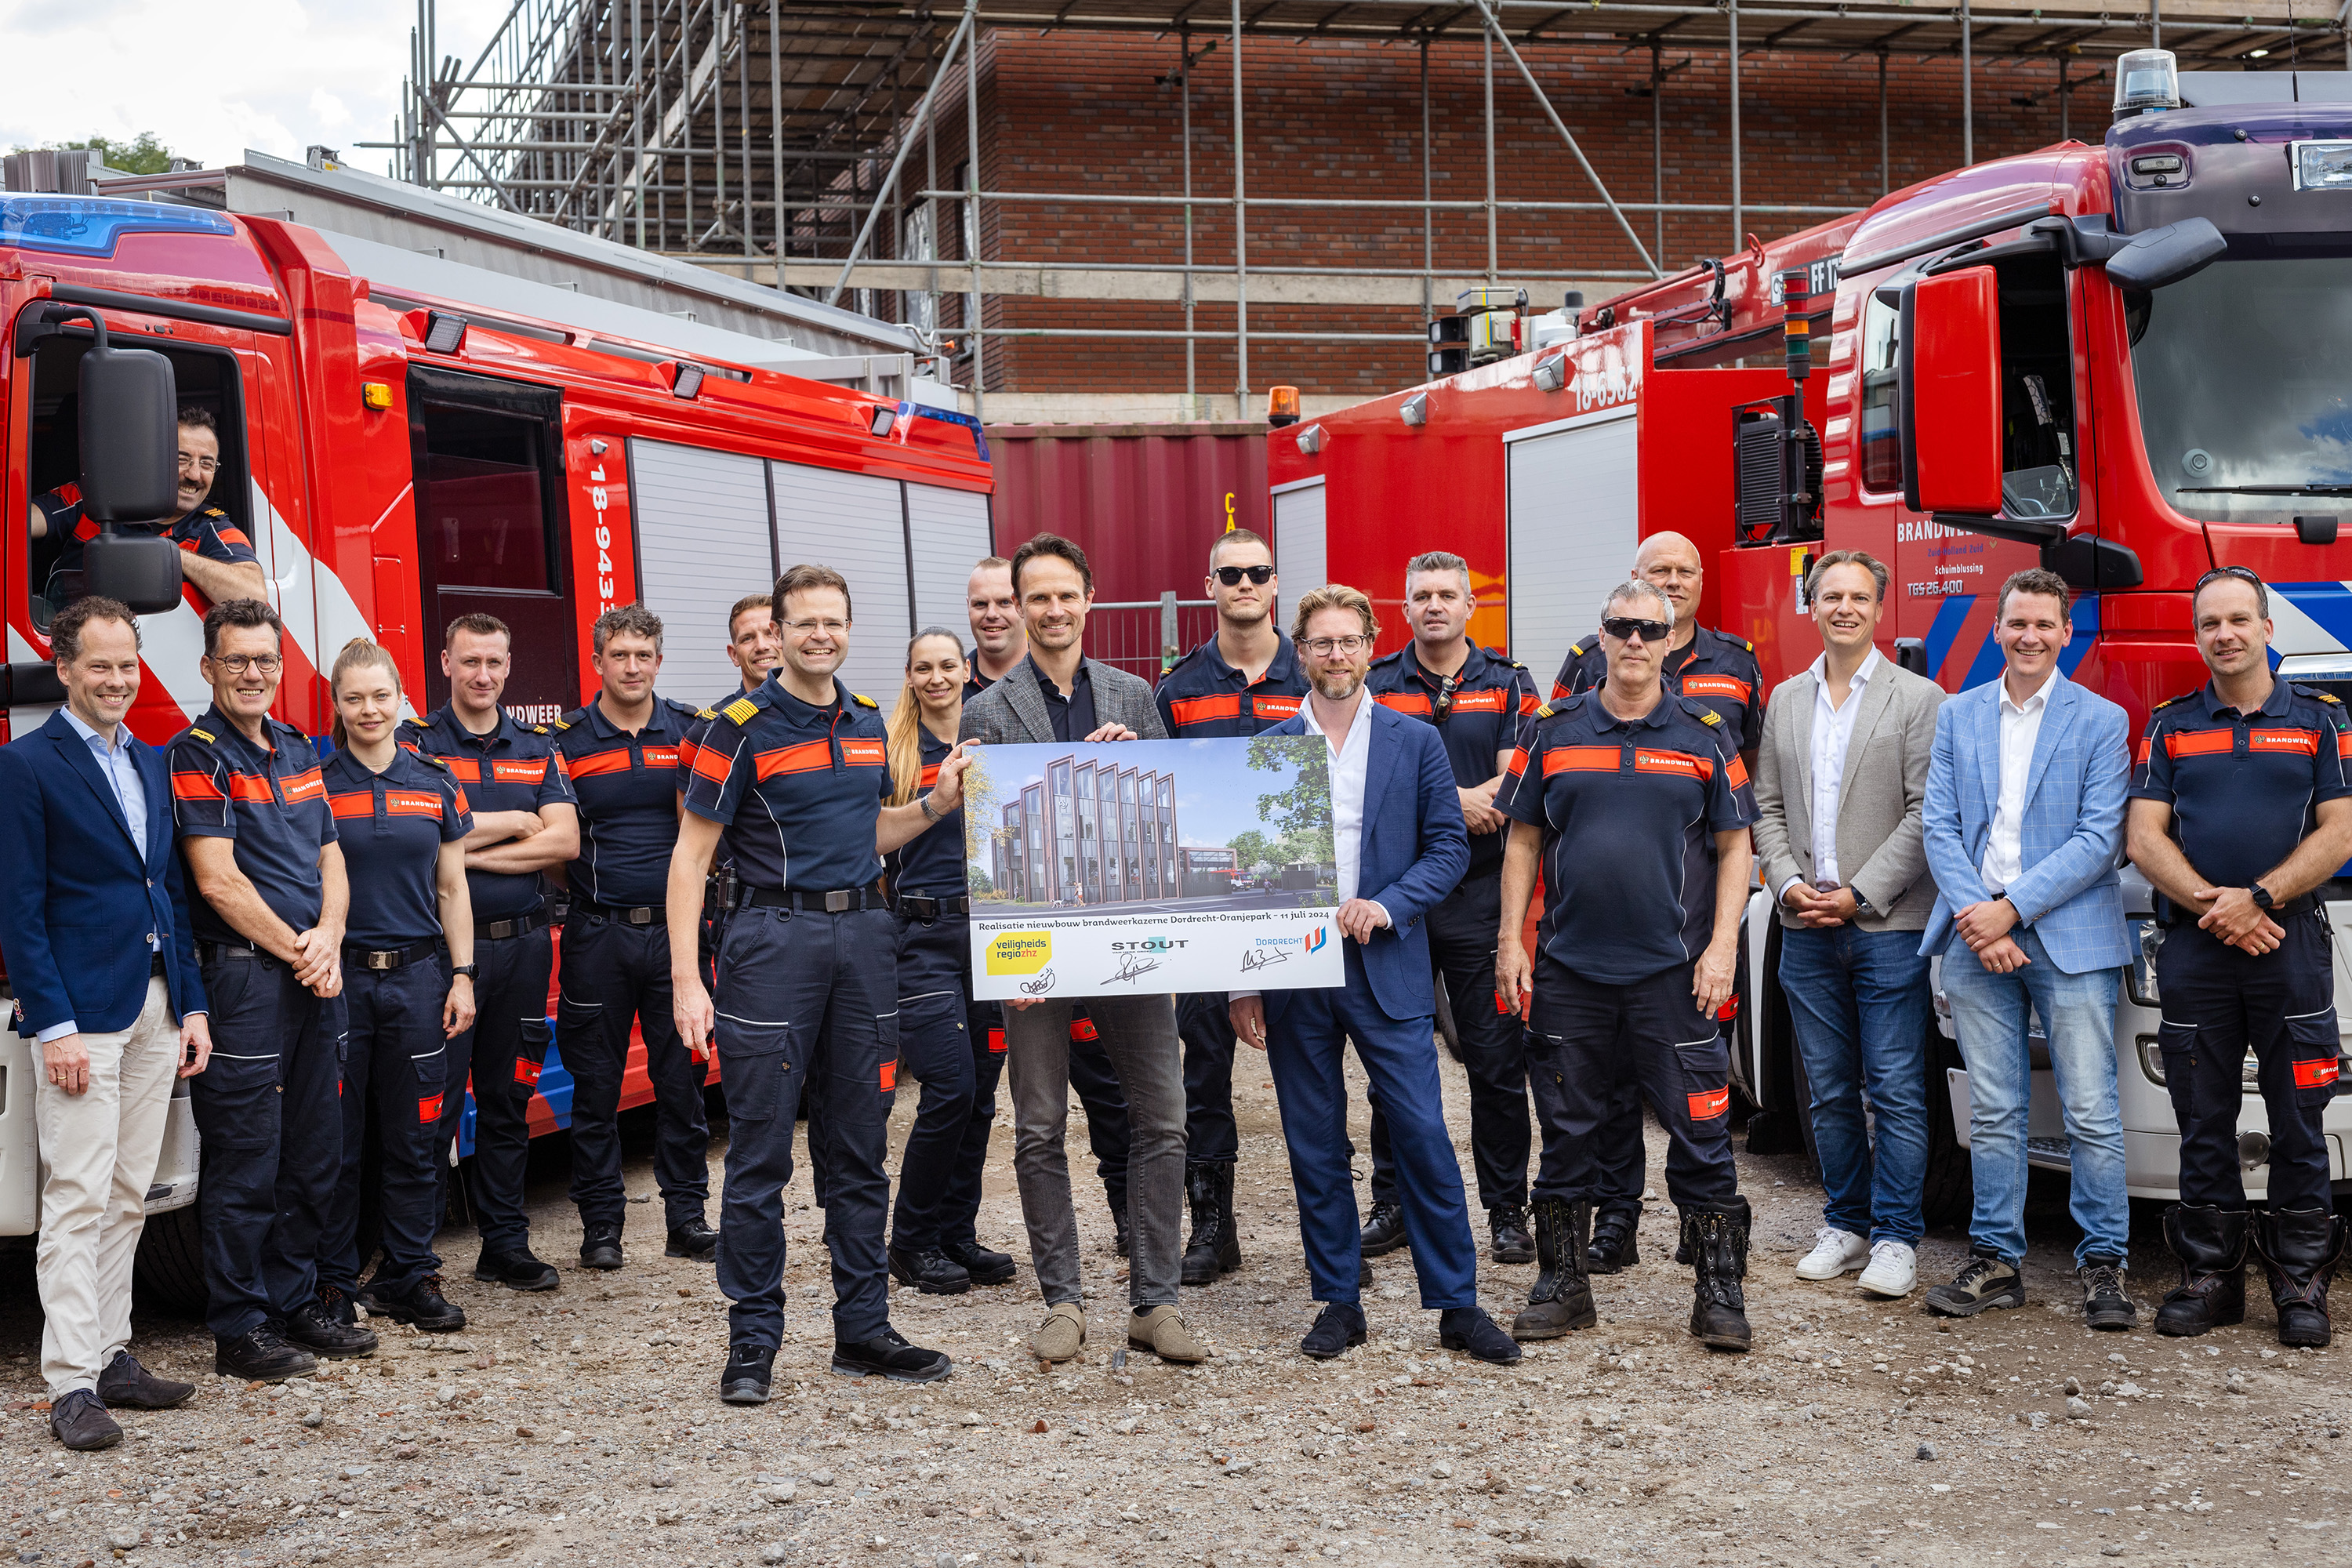 Brandweermensen bij ondertekening nieuwbouw brandweerkazerne